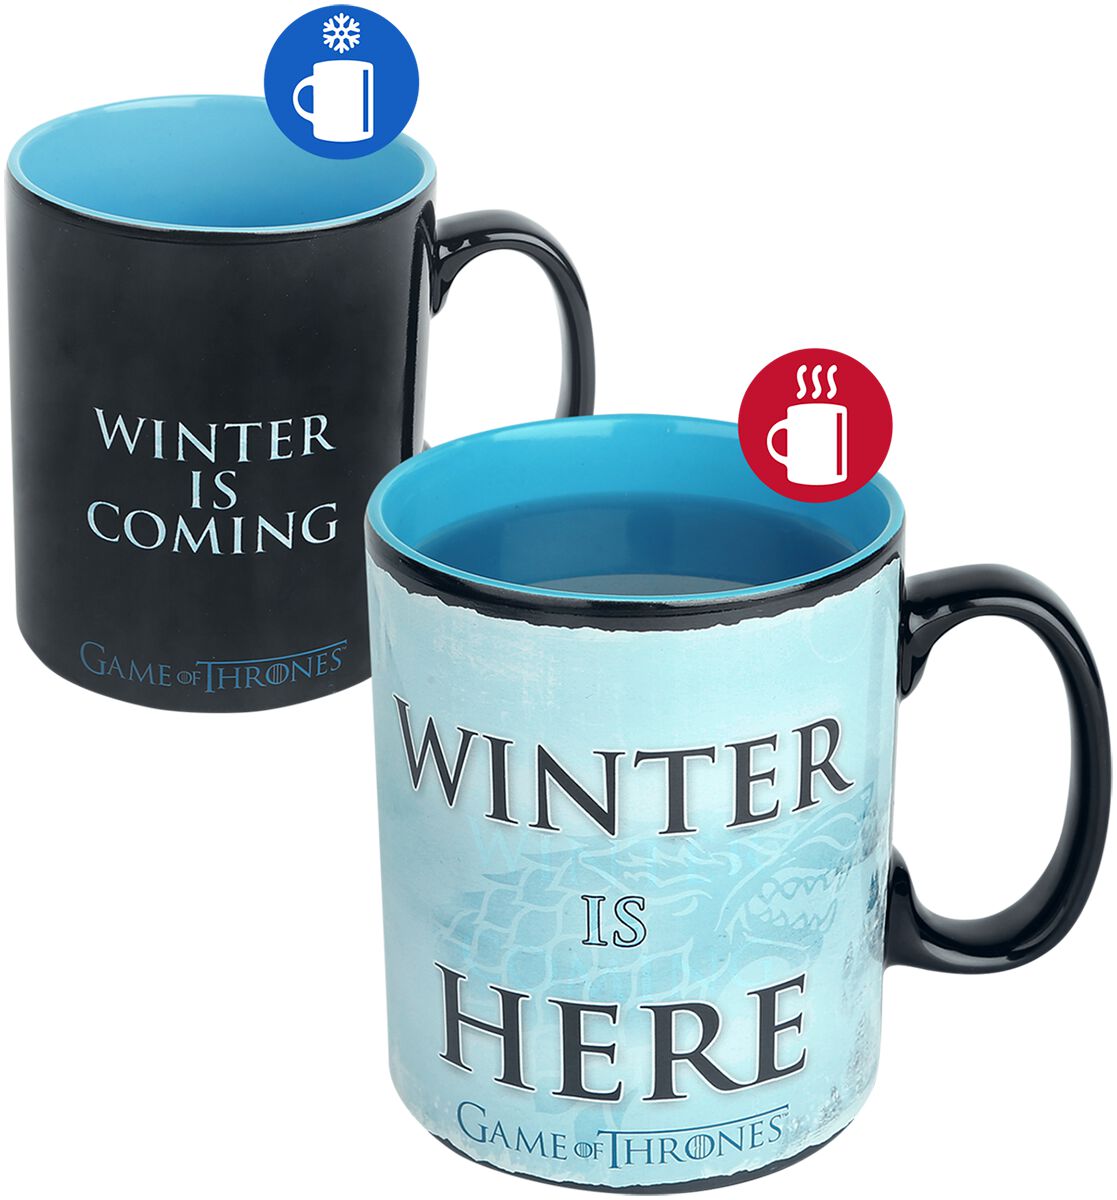 Image of Game Of Thrones Winter is here - Tasse mit Thermoeffekt Tasse blau/schwarz